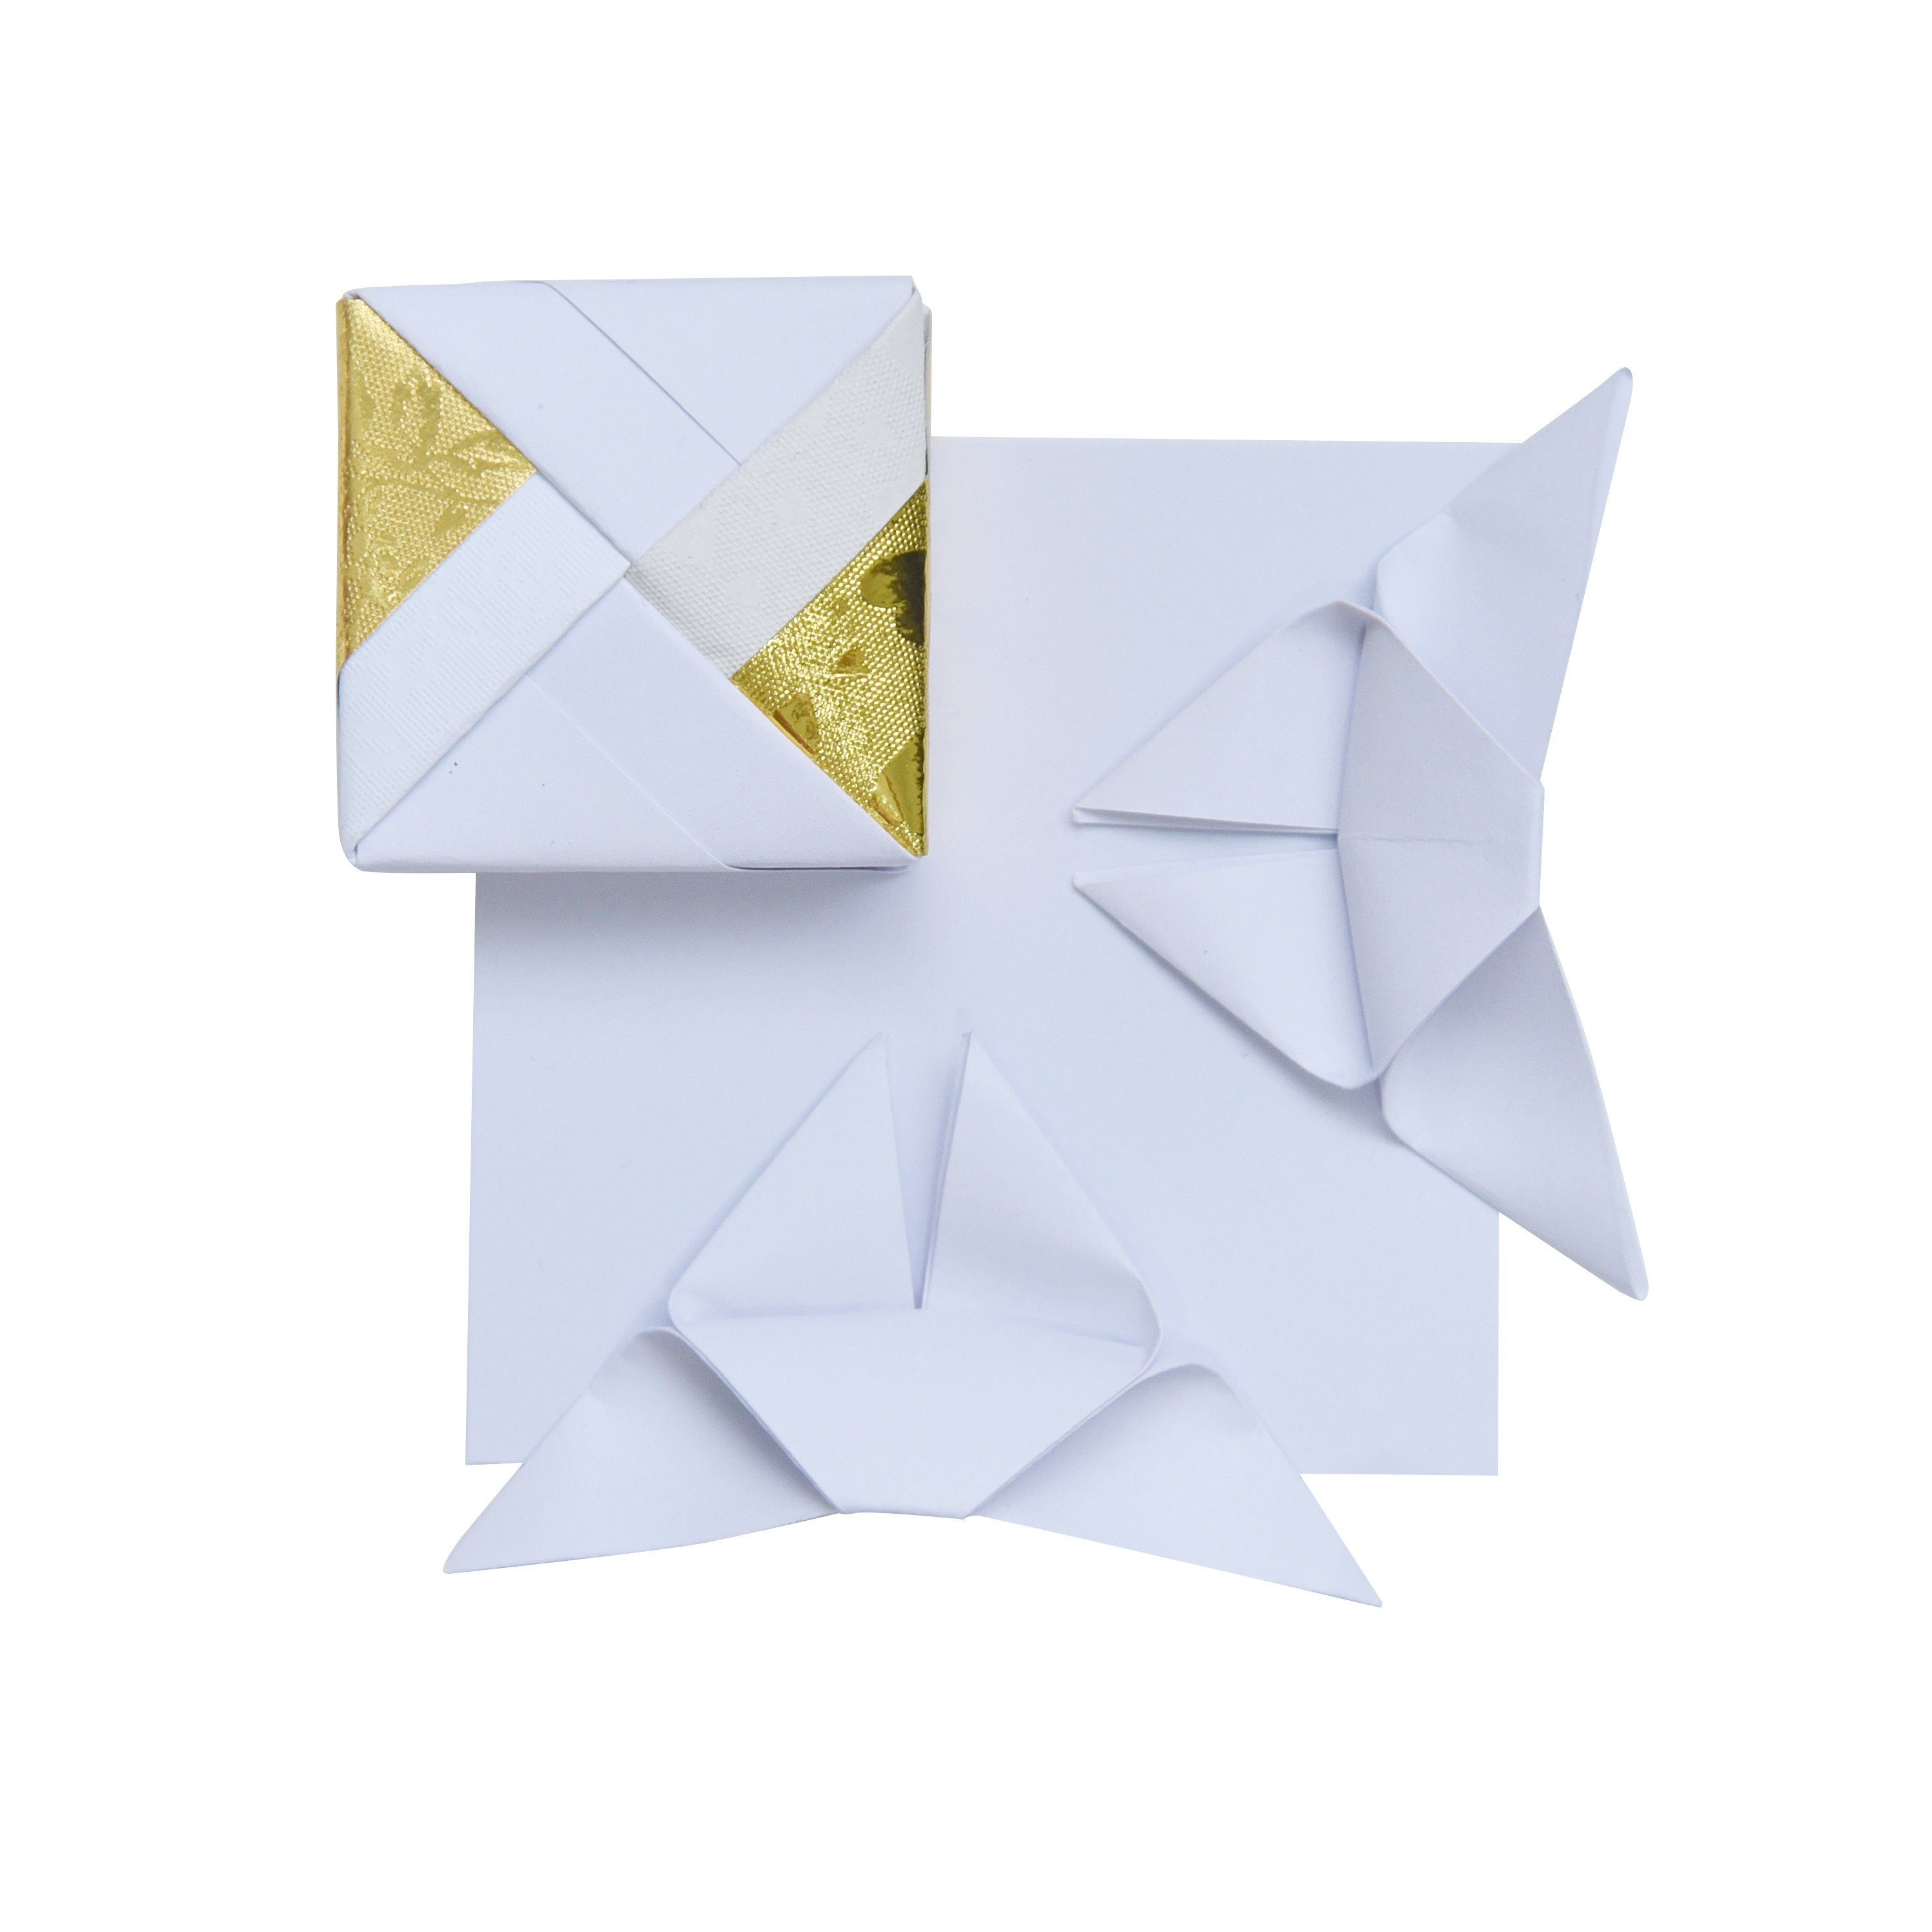 1000 hojas de papel de origami blanco - 3x3 pulgadas - Paquete de papel cuadrado para plegar, grullas de origami y decoración